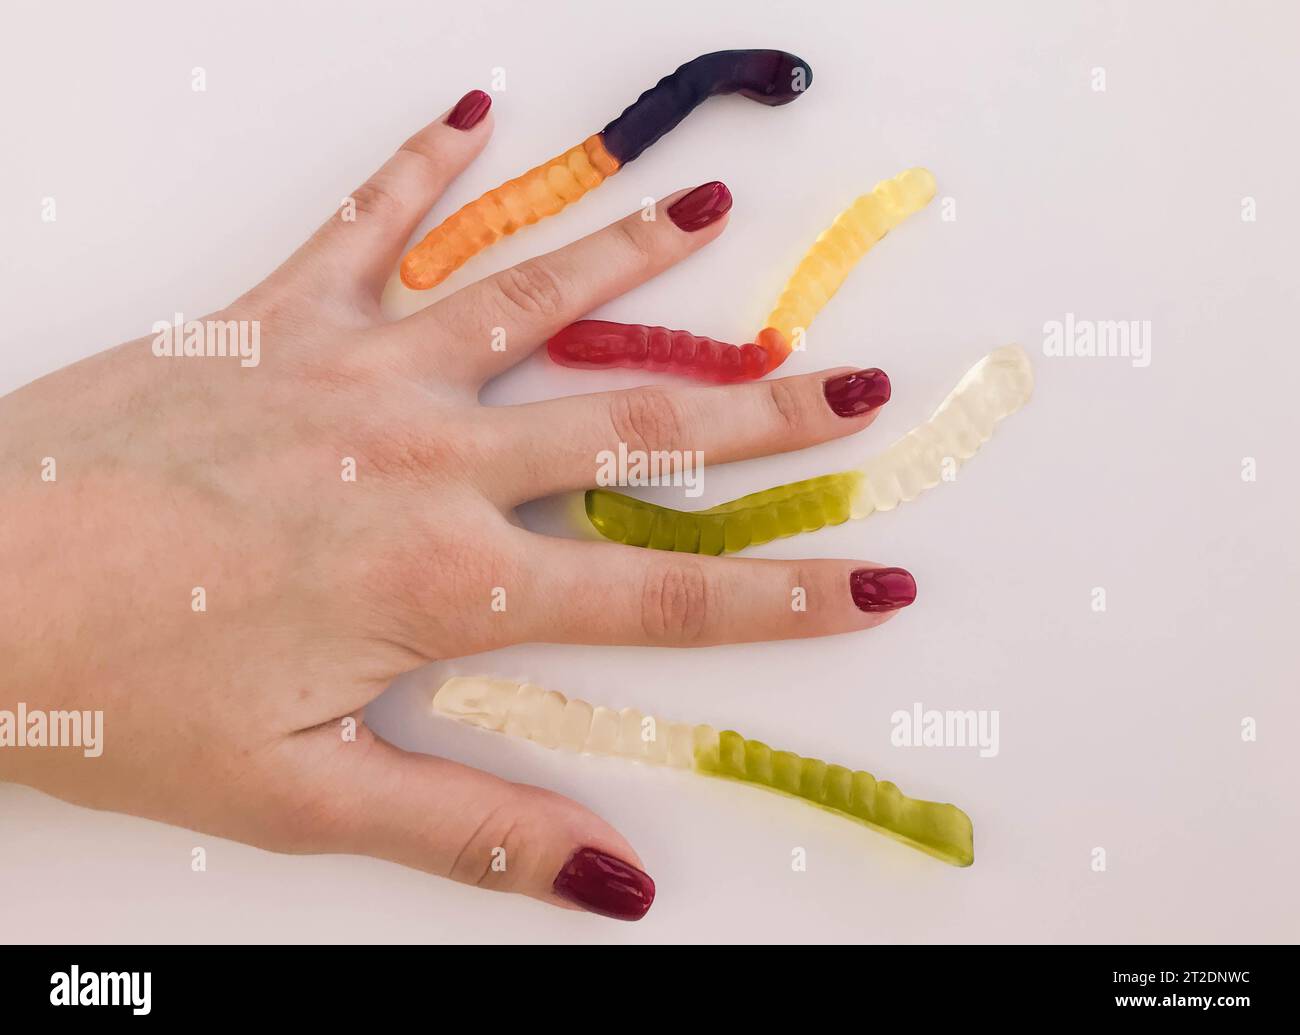 Lange, mundtränende, mehrfarbige Würmer auf der Hand eines Mädchens mit einer hellroten Maniküre. Die Würmer liegen zwischen den Fingern. Kreative Aufnahmen von br Stockfoto